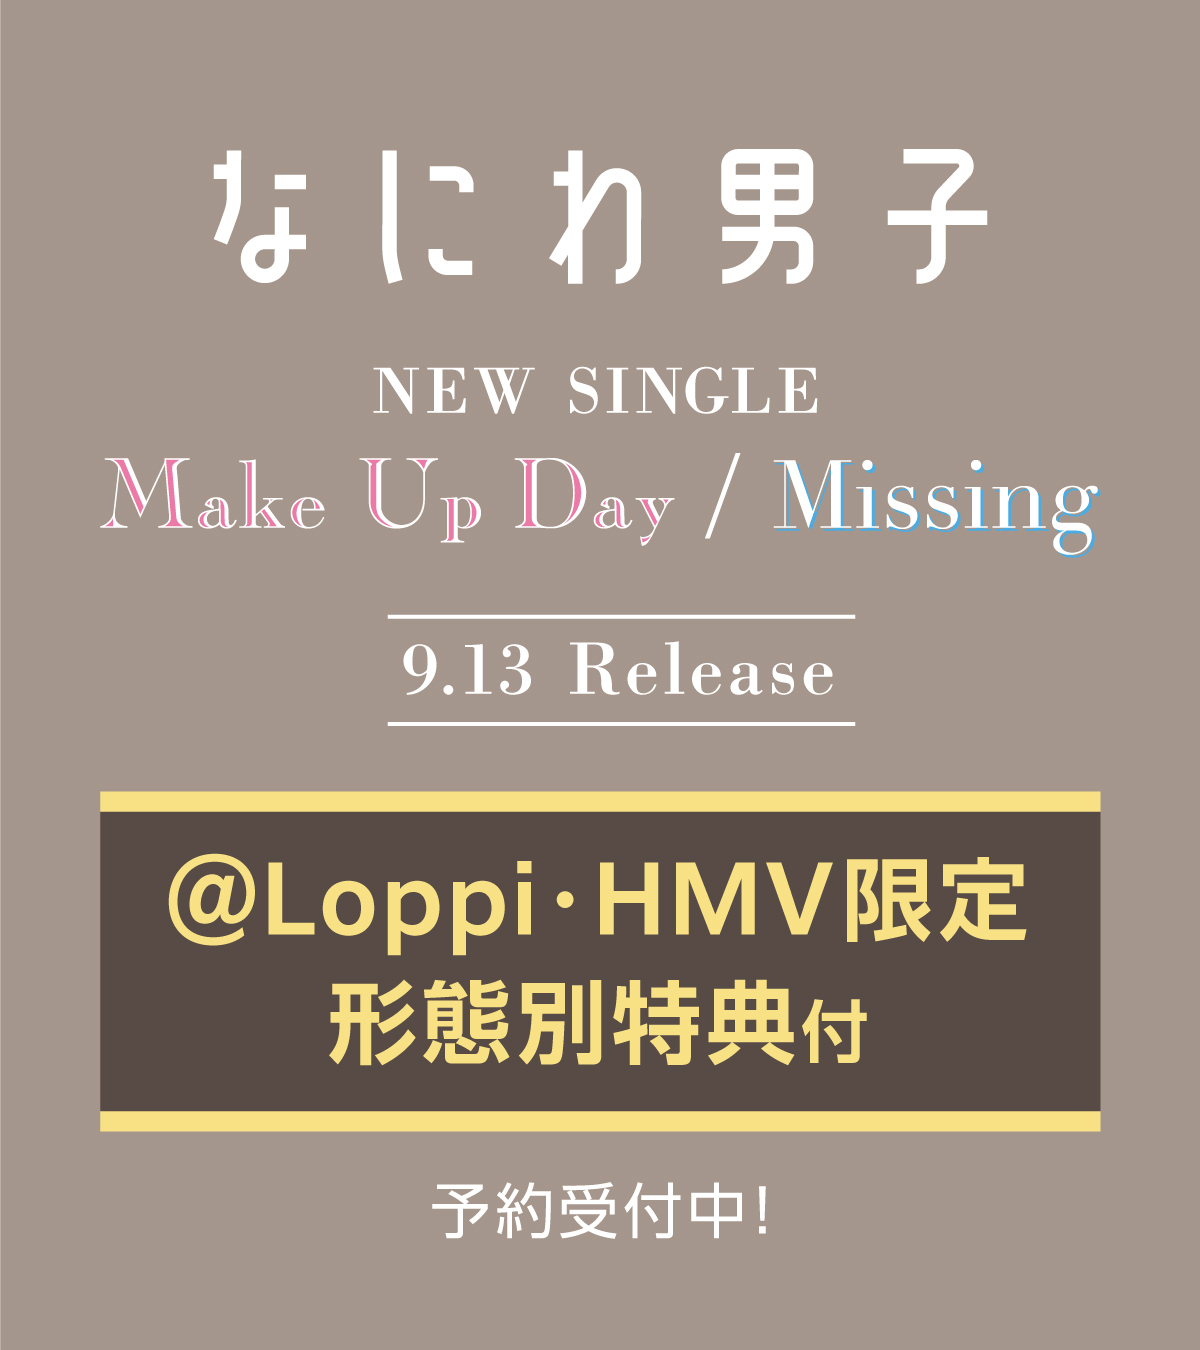 ローソン on X: "#なにわ男子 5th Single「Make Up Day/Missing」9/13